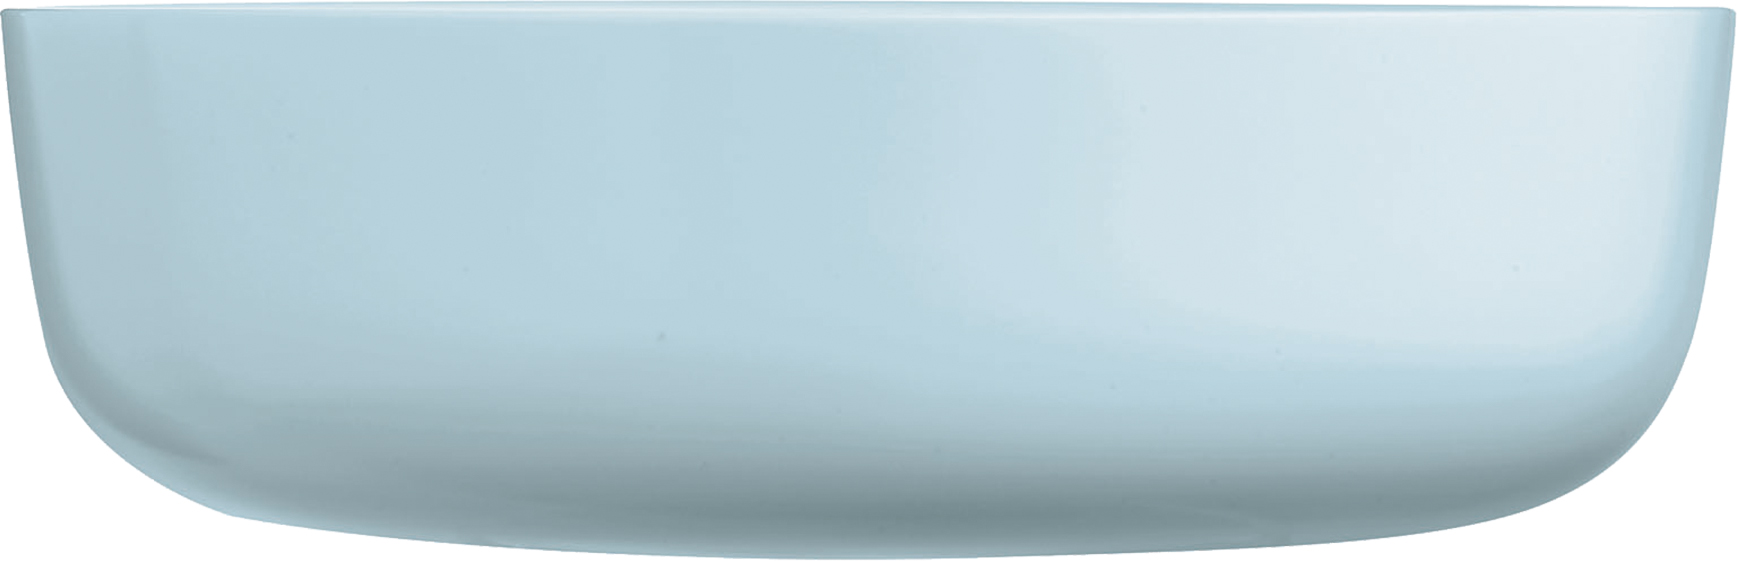 Schale DIWALI, Farbe: Paradise blue, Durchmesser: 22 cm, Höhe 68 mm, Opalglas (gehärtet)